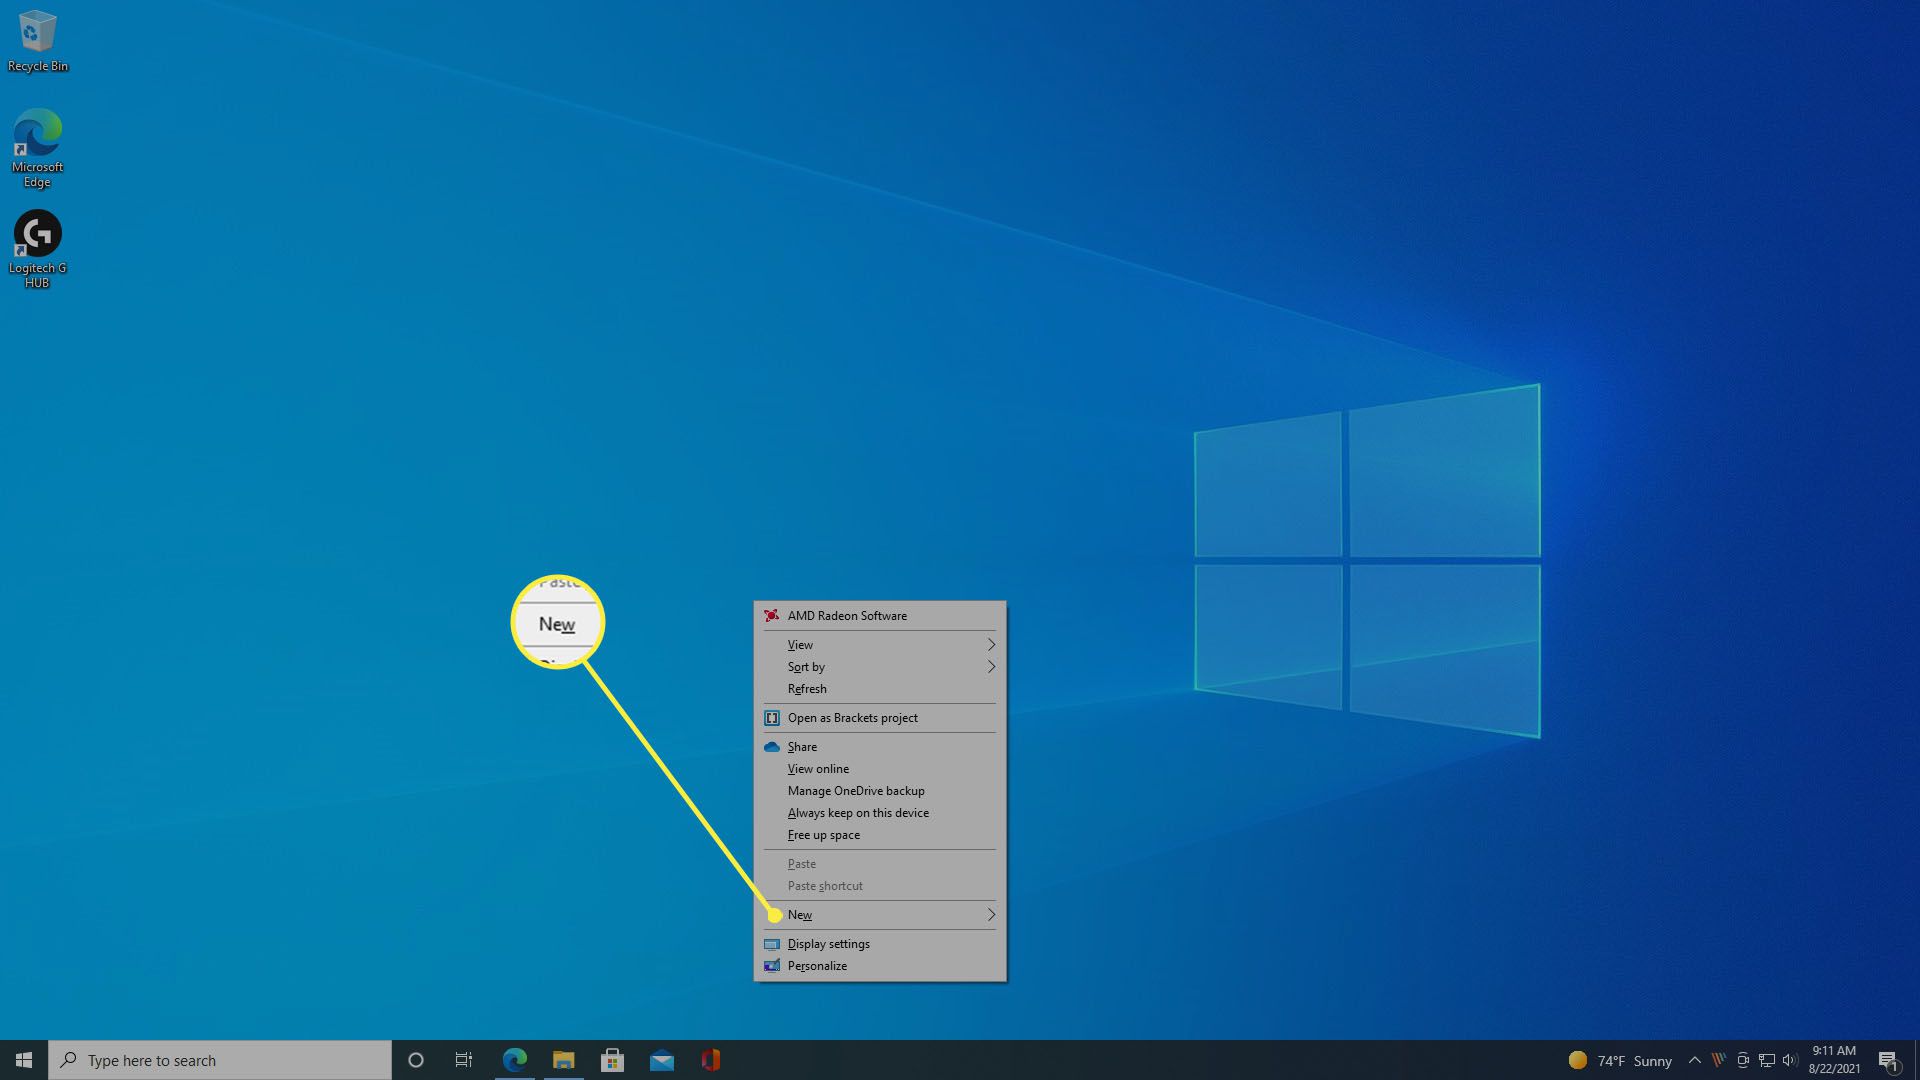 Valitse Uusi Windows 10 -työpöydän hiiren kakkospainikkeen pikavalikosta.